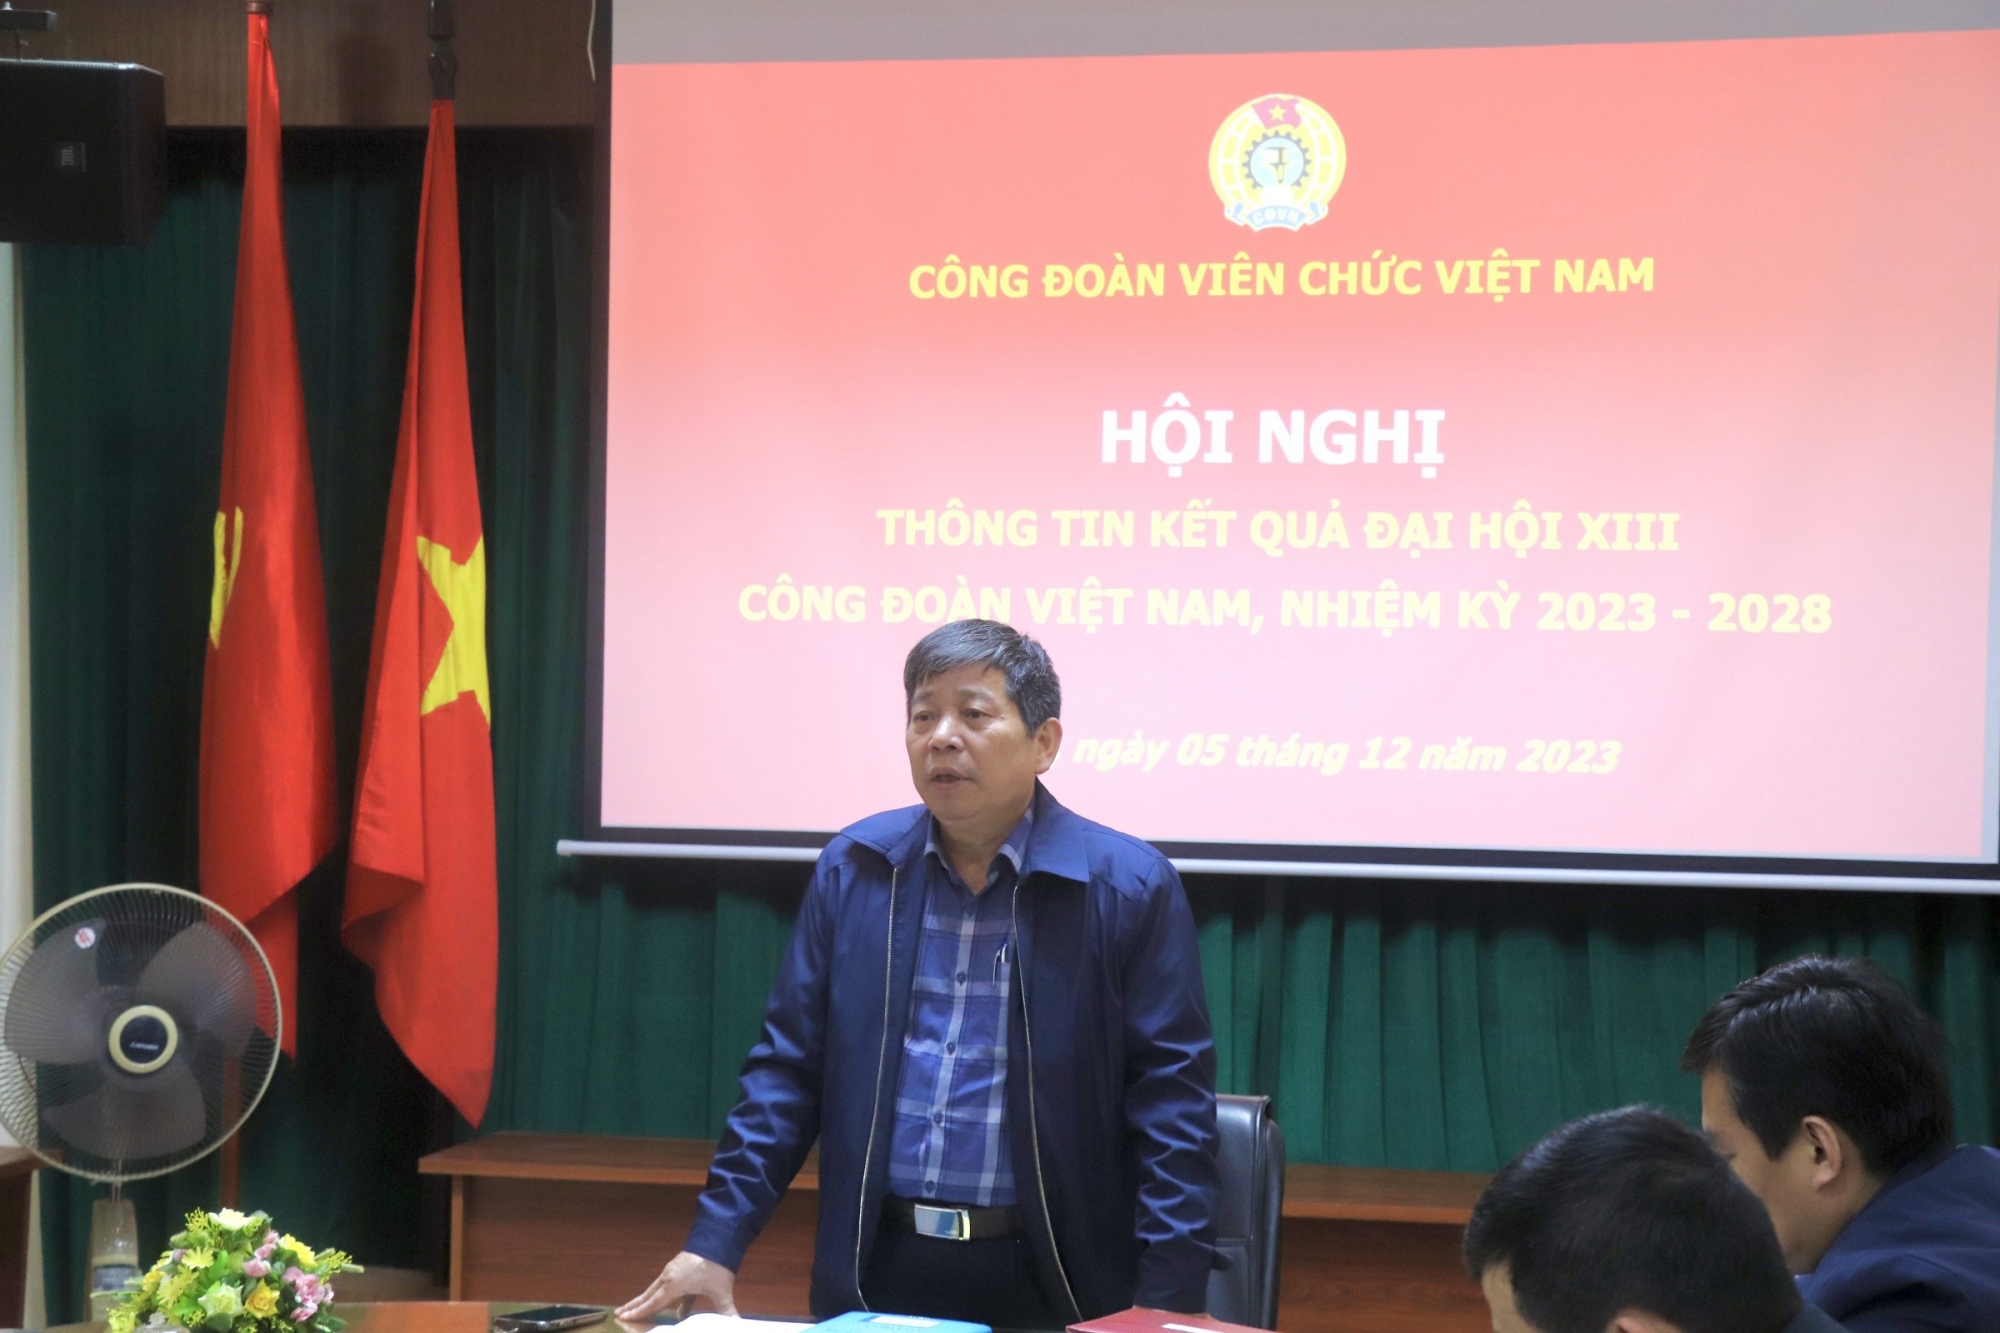 Công đoàn Viên chức Việt Nam thông tin nhanh kết quả Đại hội XIII Công đoàn Việt Nam, nhiệm kỳ 2023 - 2028